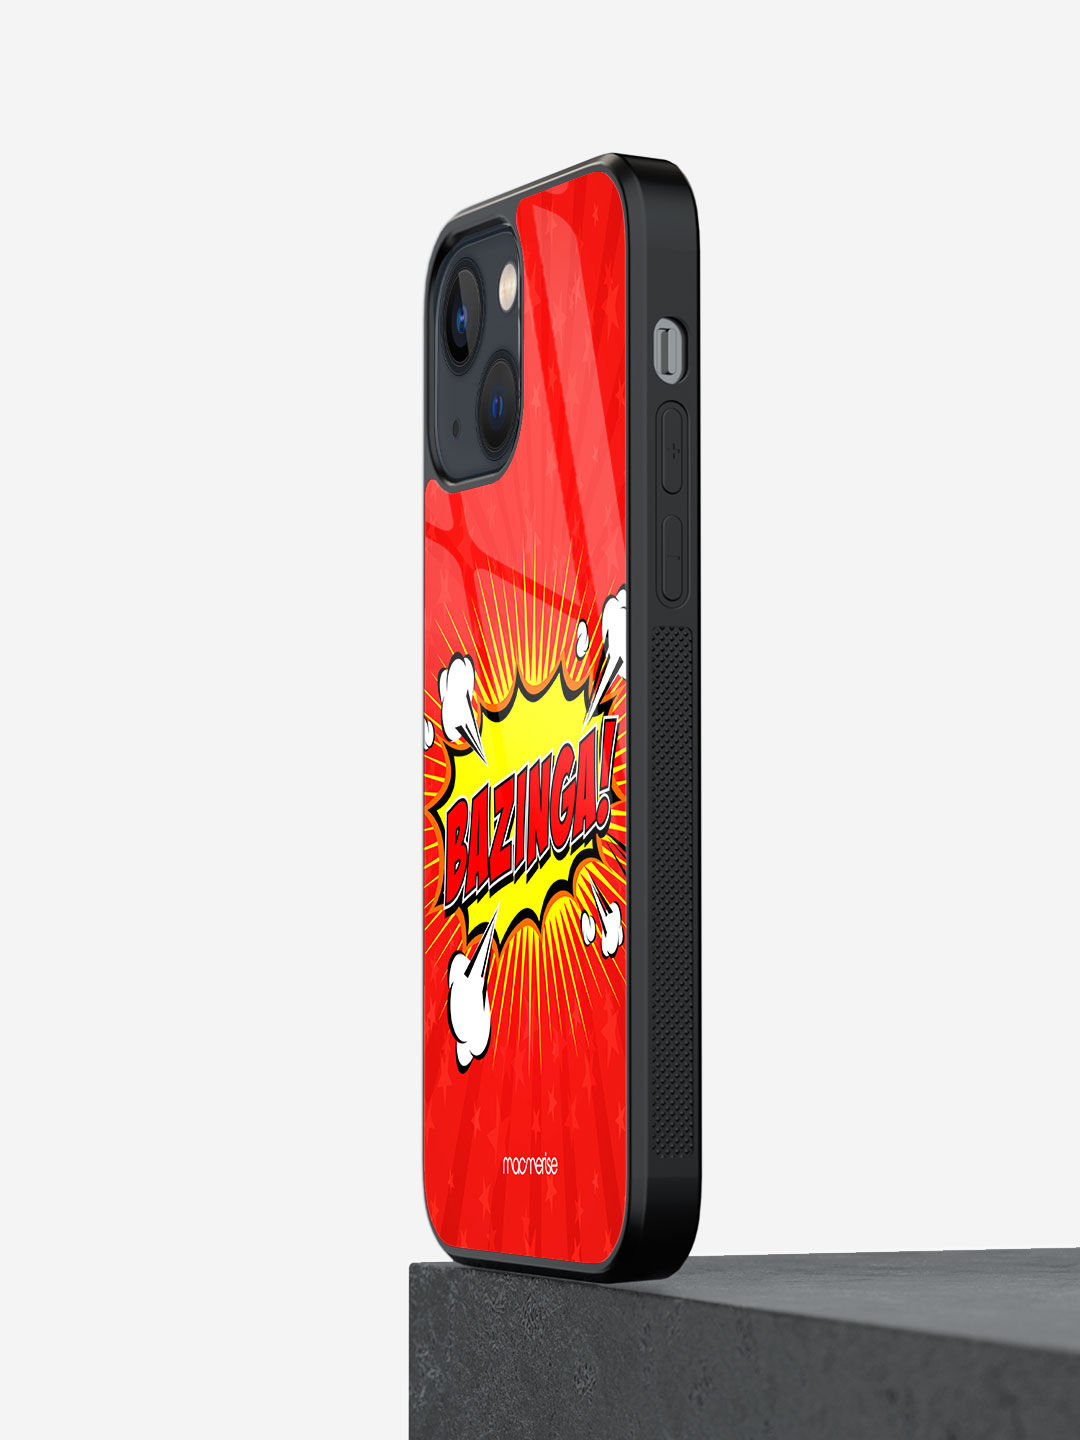 Bazinga - Glass Case For Iphone 13 Mini